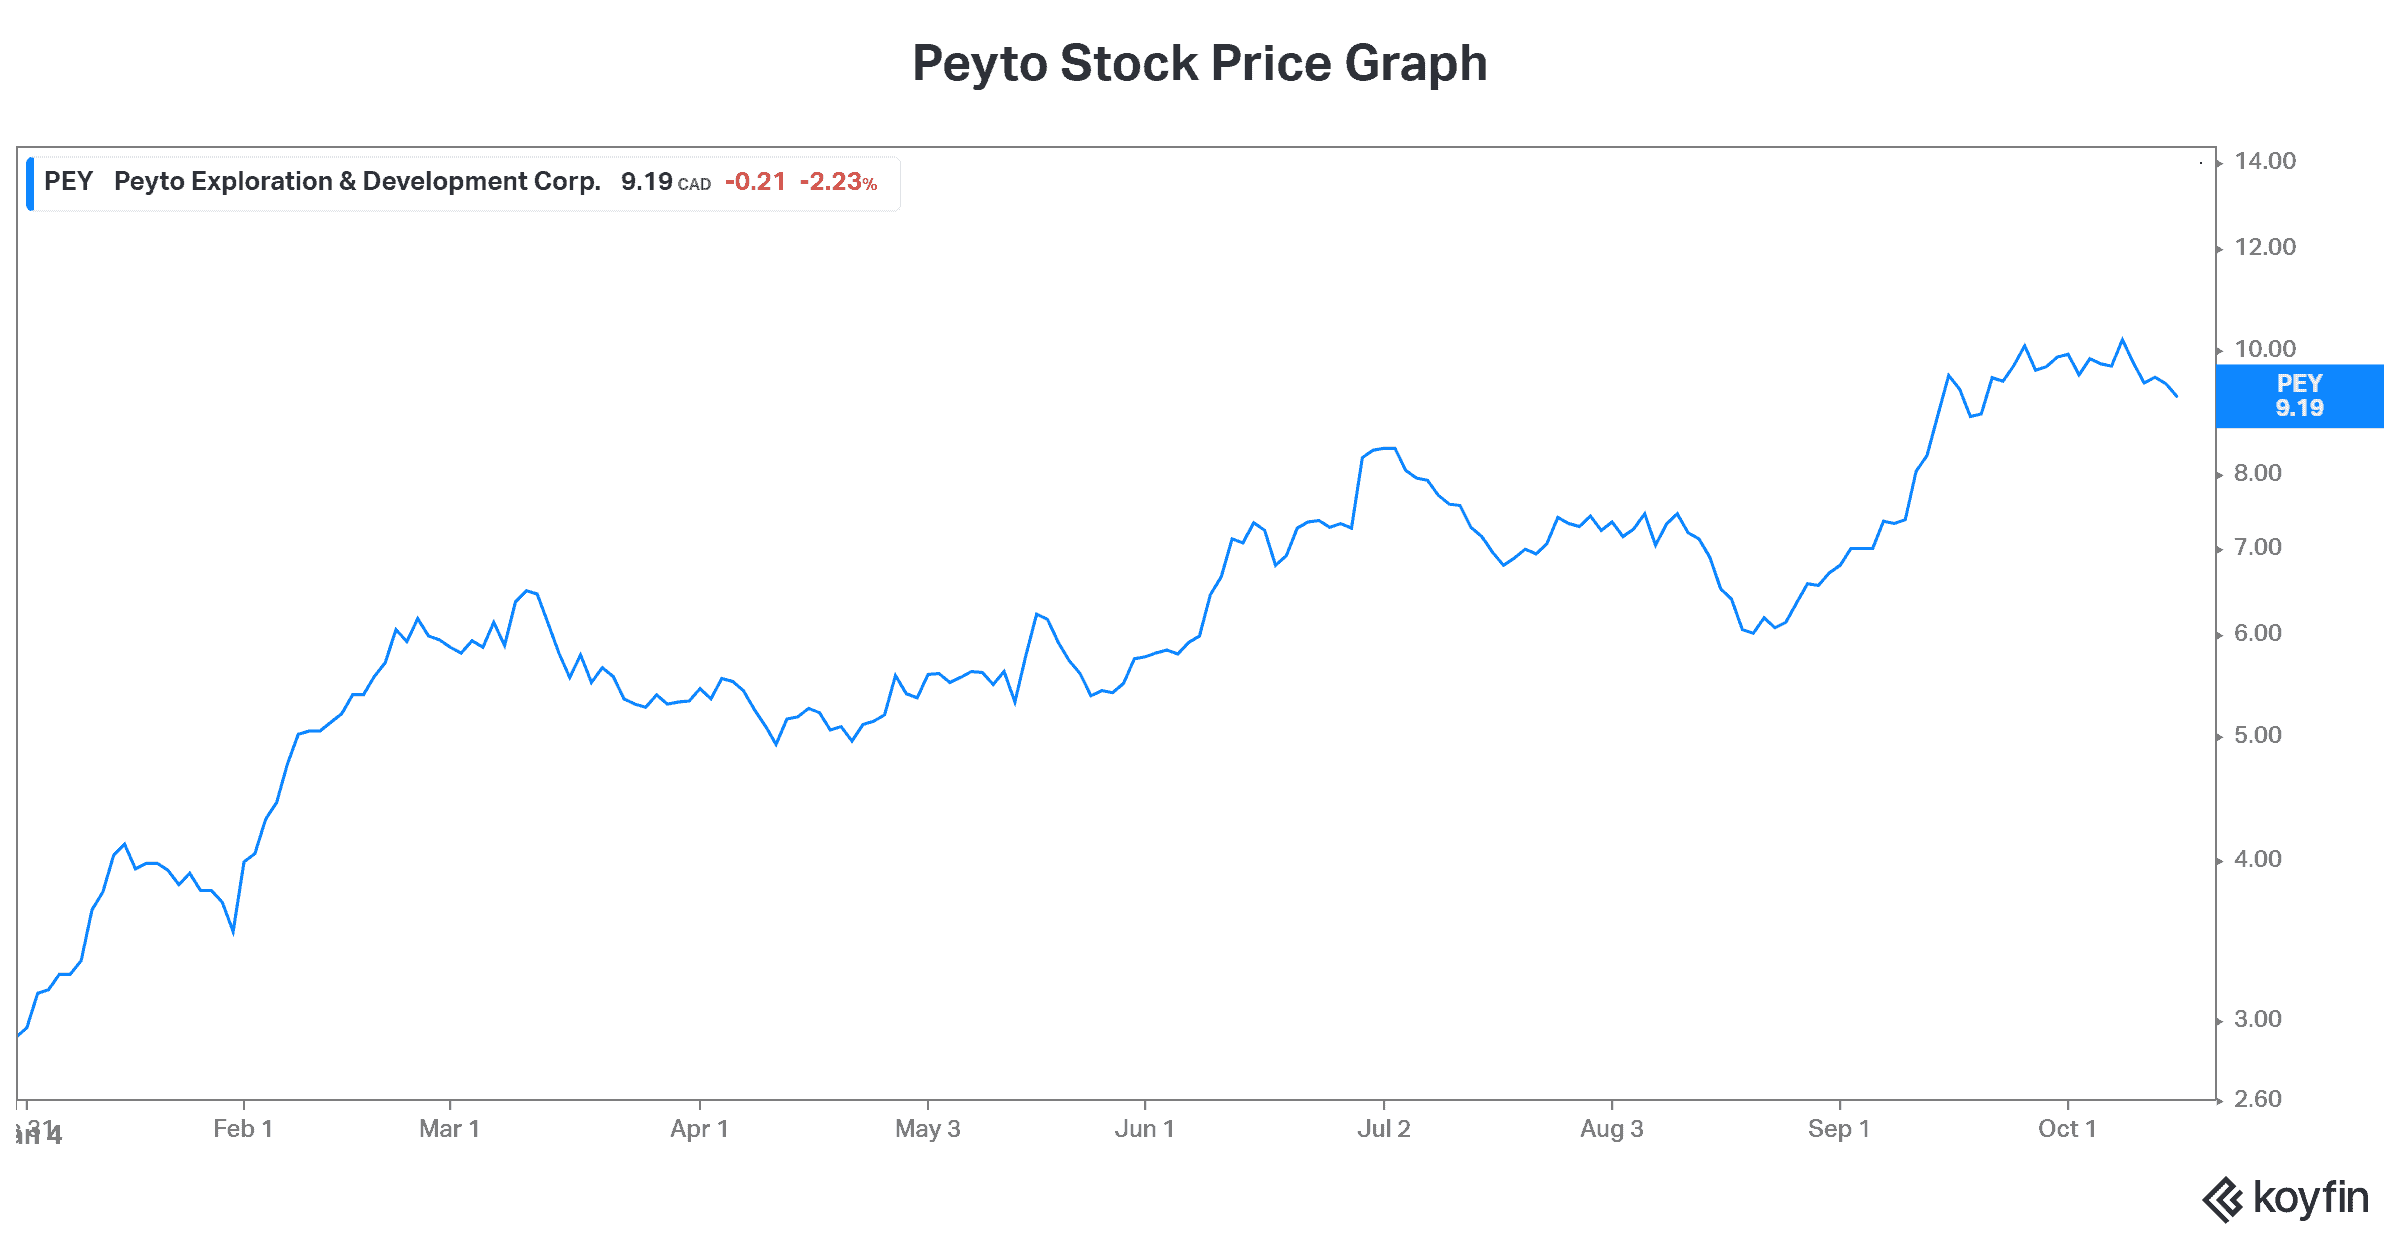 Peyto energy stock